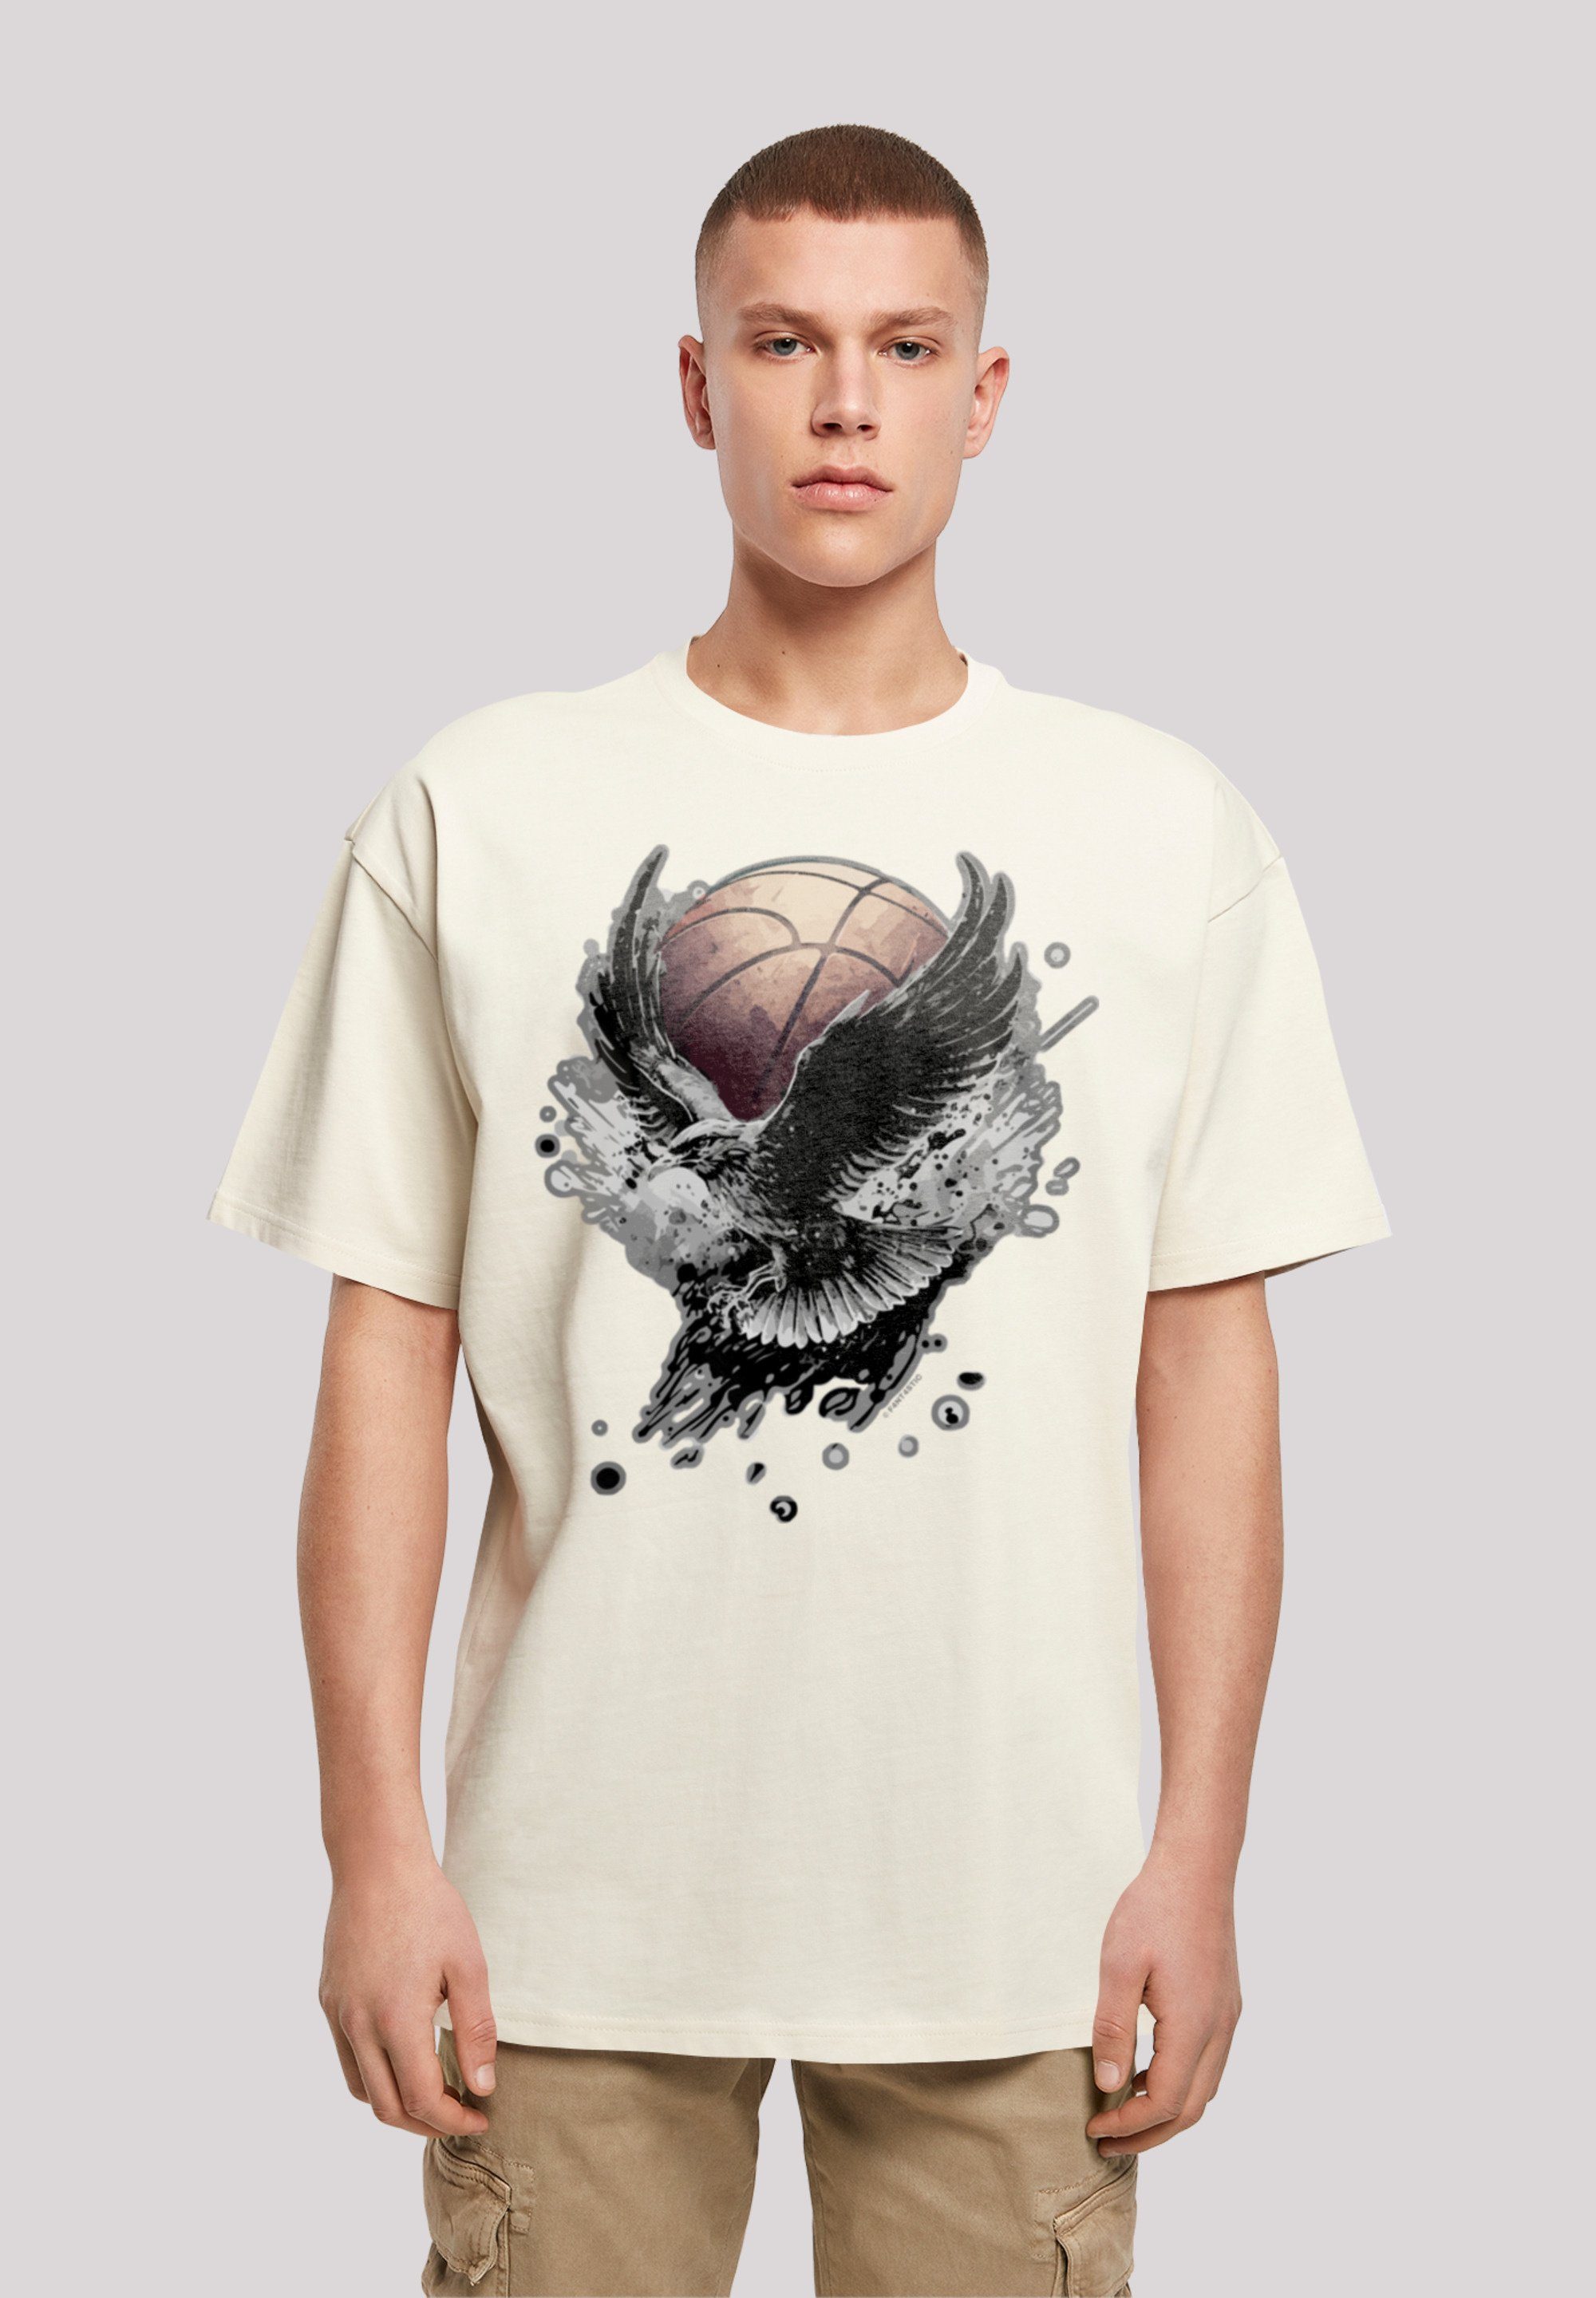 F4NT4STIC T-Shirt Print, eine Adler Basketball Fällt bitte Größe aus, bestellen kleiner weit